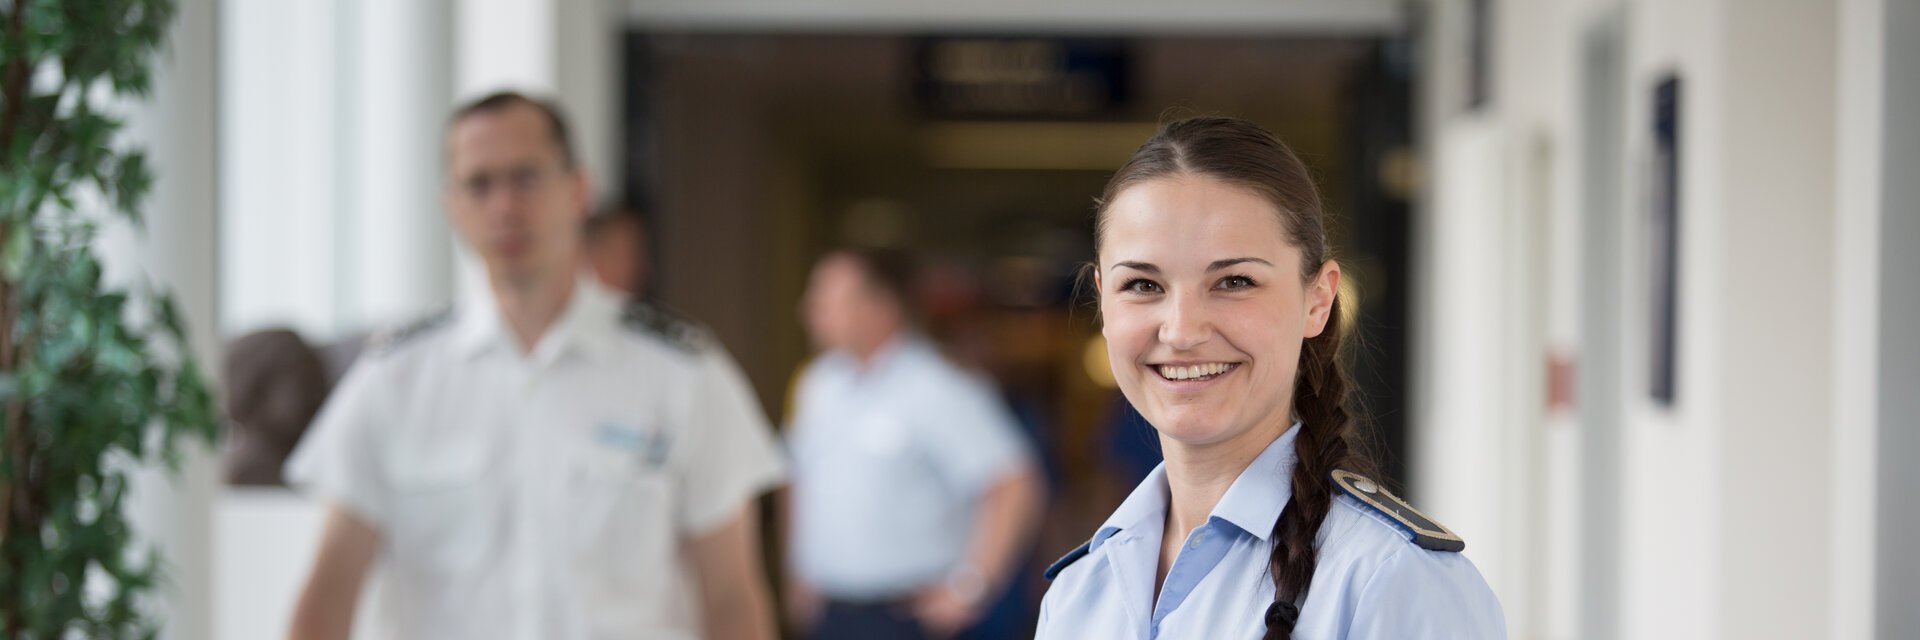 Personalsachbearbeiterin in Uniform steht mit Unterlagen in den HÃ¤nden in einem Flur des Bundeswehrkrankenhauses.